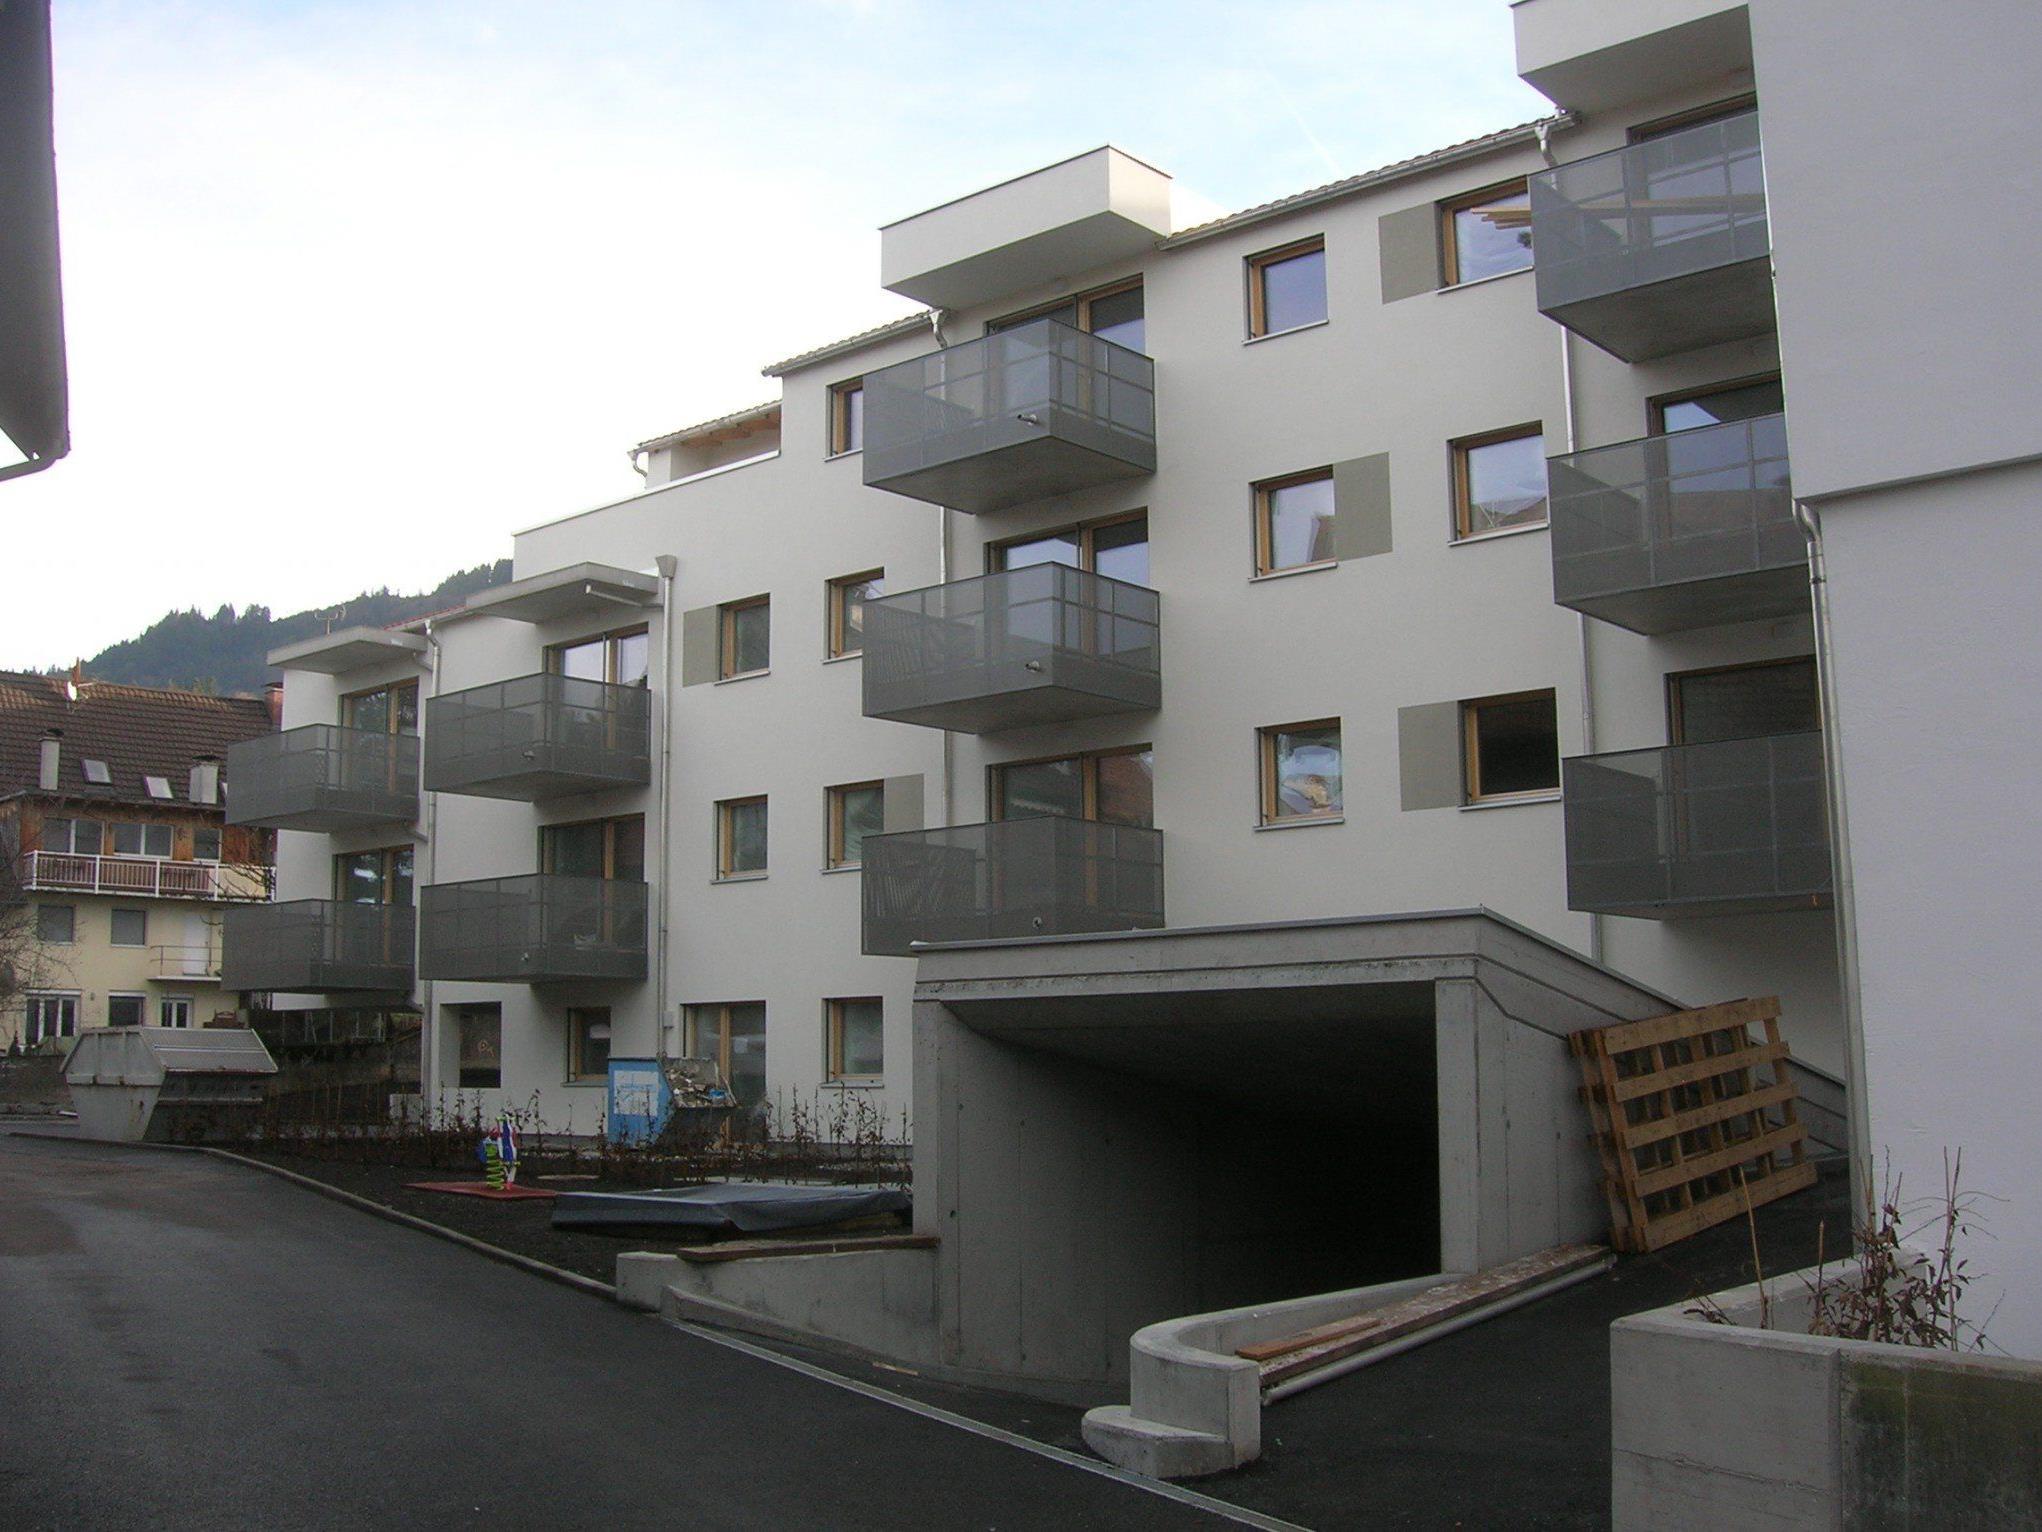 Traum vieler Wohnungssuchenden: Eine neue „Stadtwohnung“ in einer attraktiven Wohngegend wie hier auf dem Schlossbräu-Areal im Oberdorf.